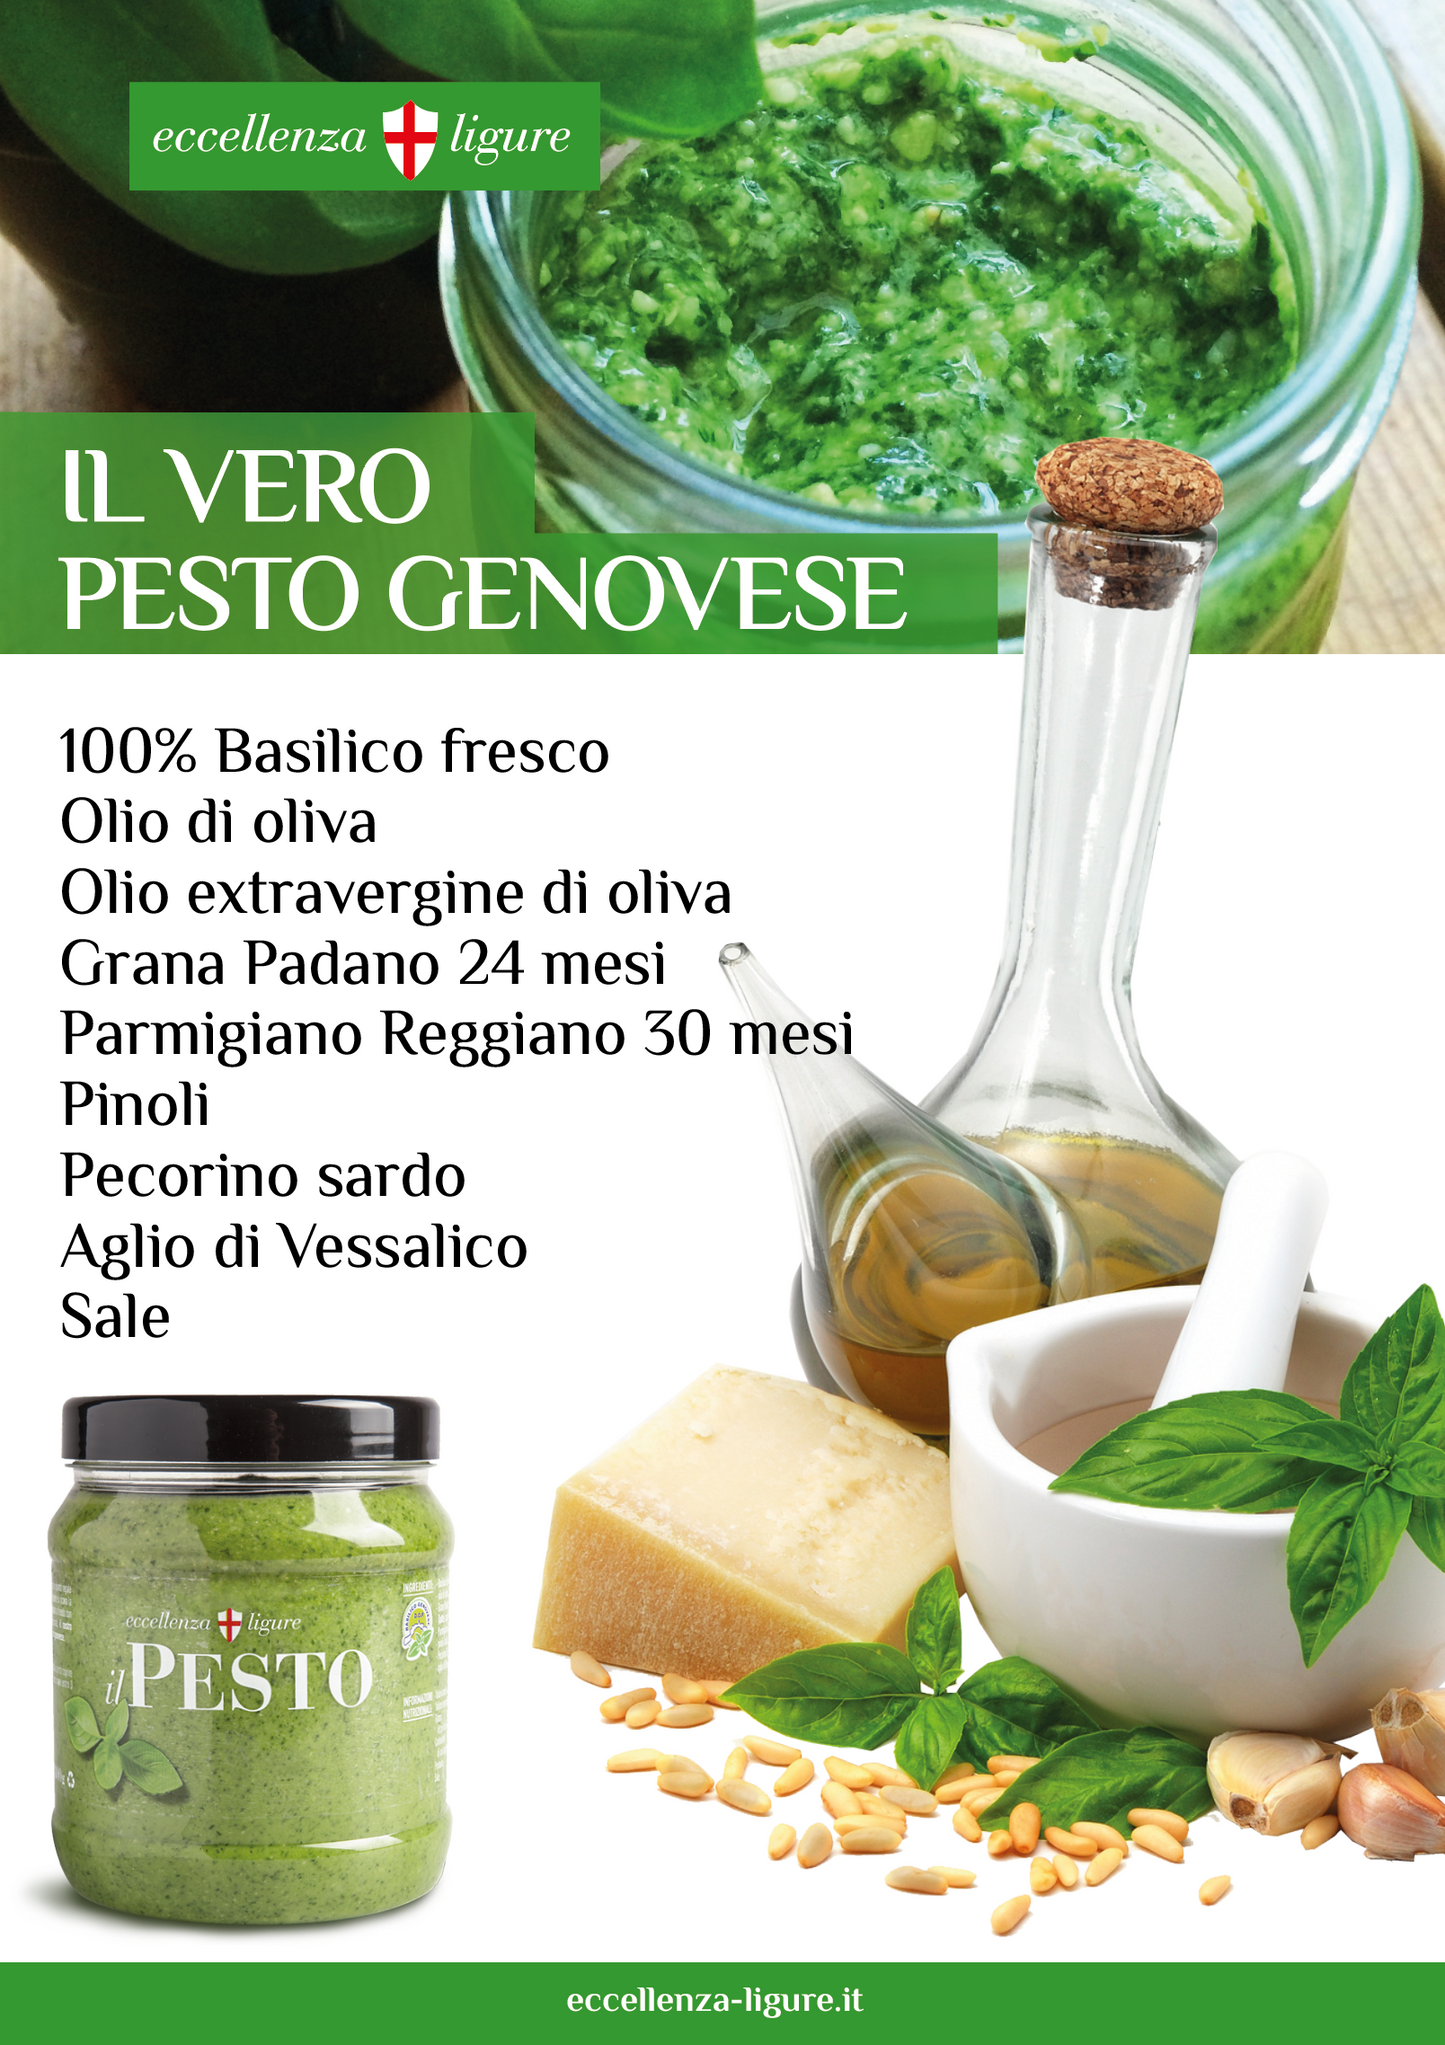 Pesto Genovese con Basilico Fresco 8 barattoli da 130g- Imballo e spedizione nazionale Inclusa!